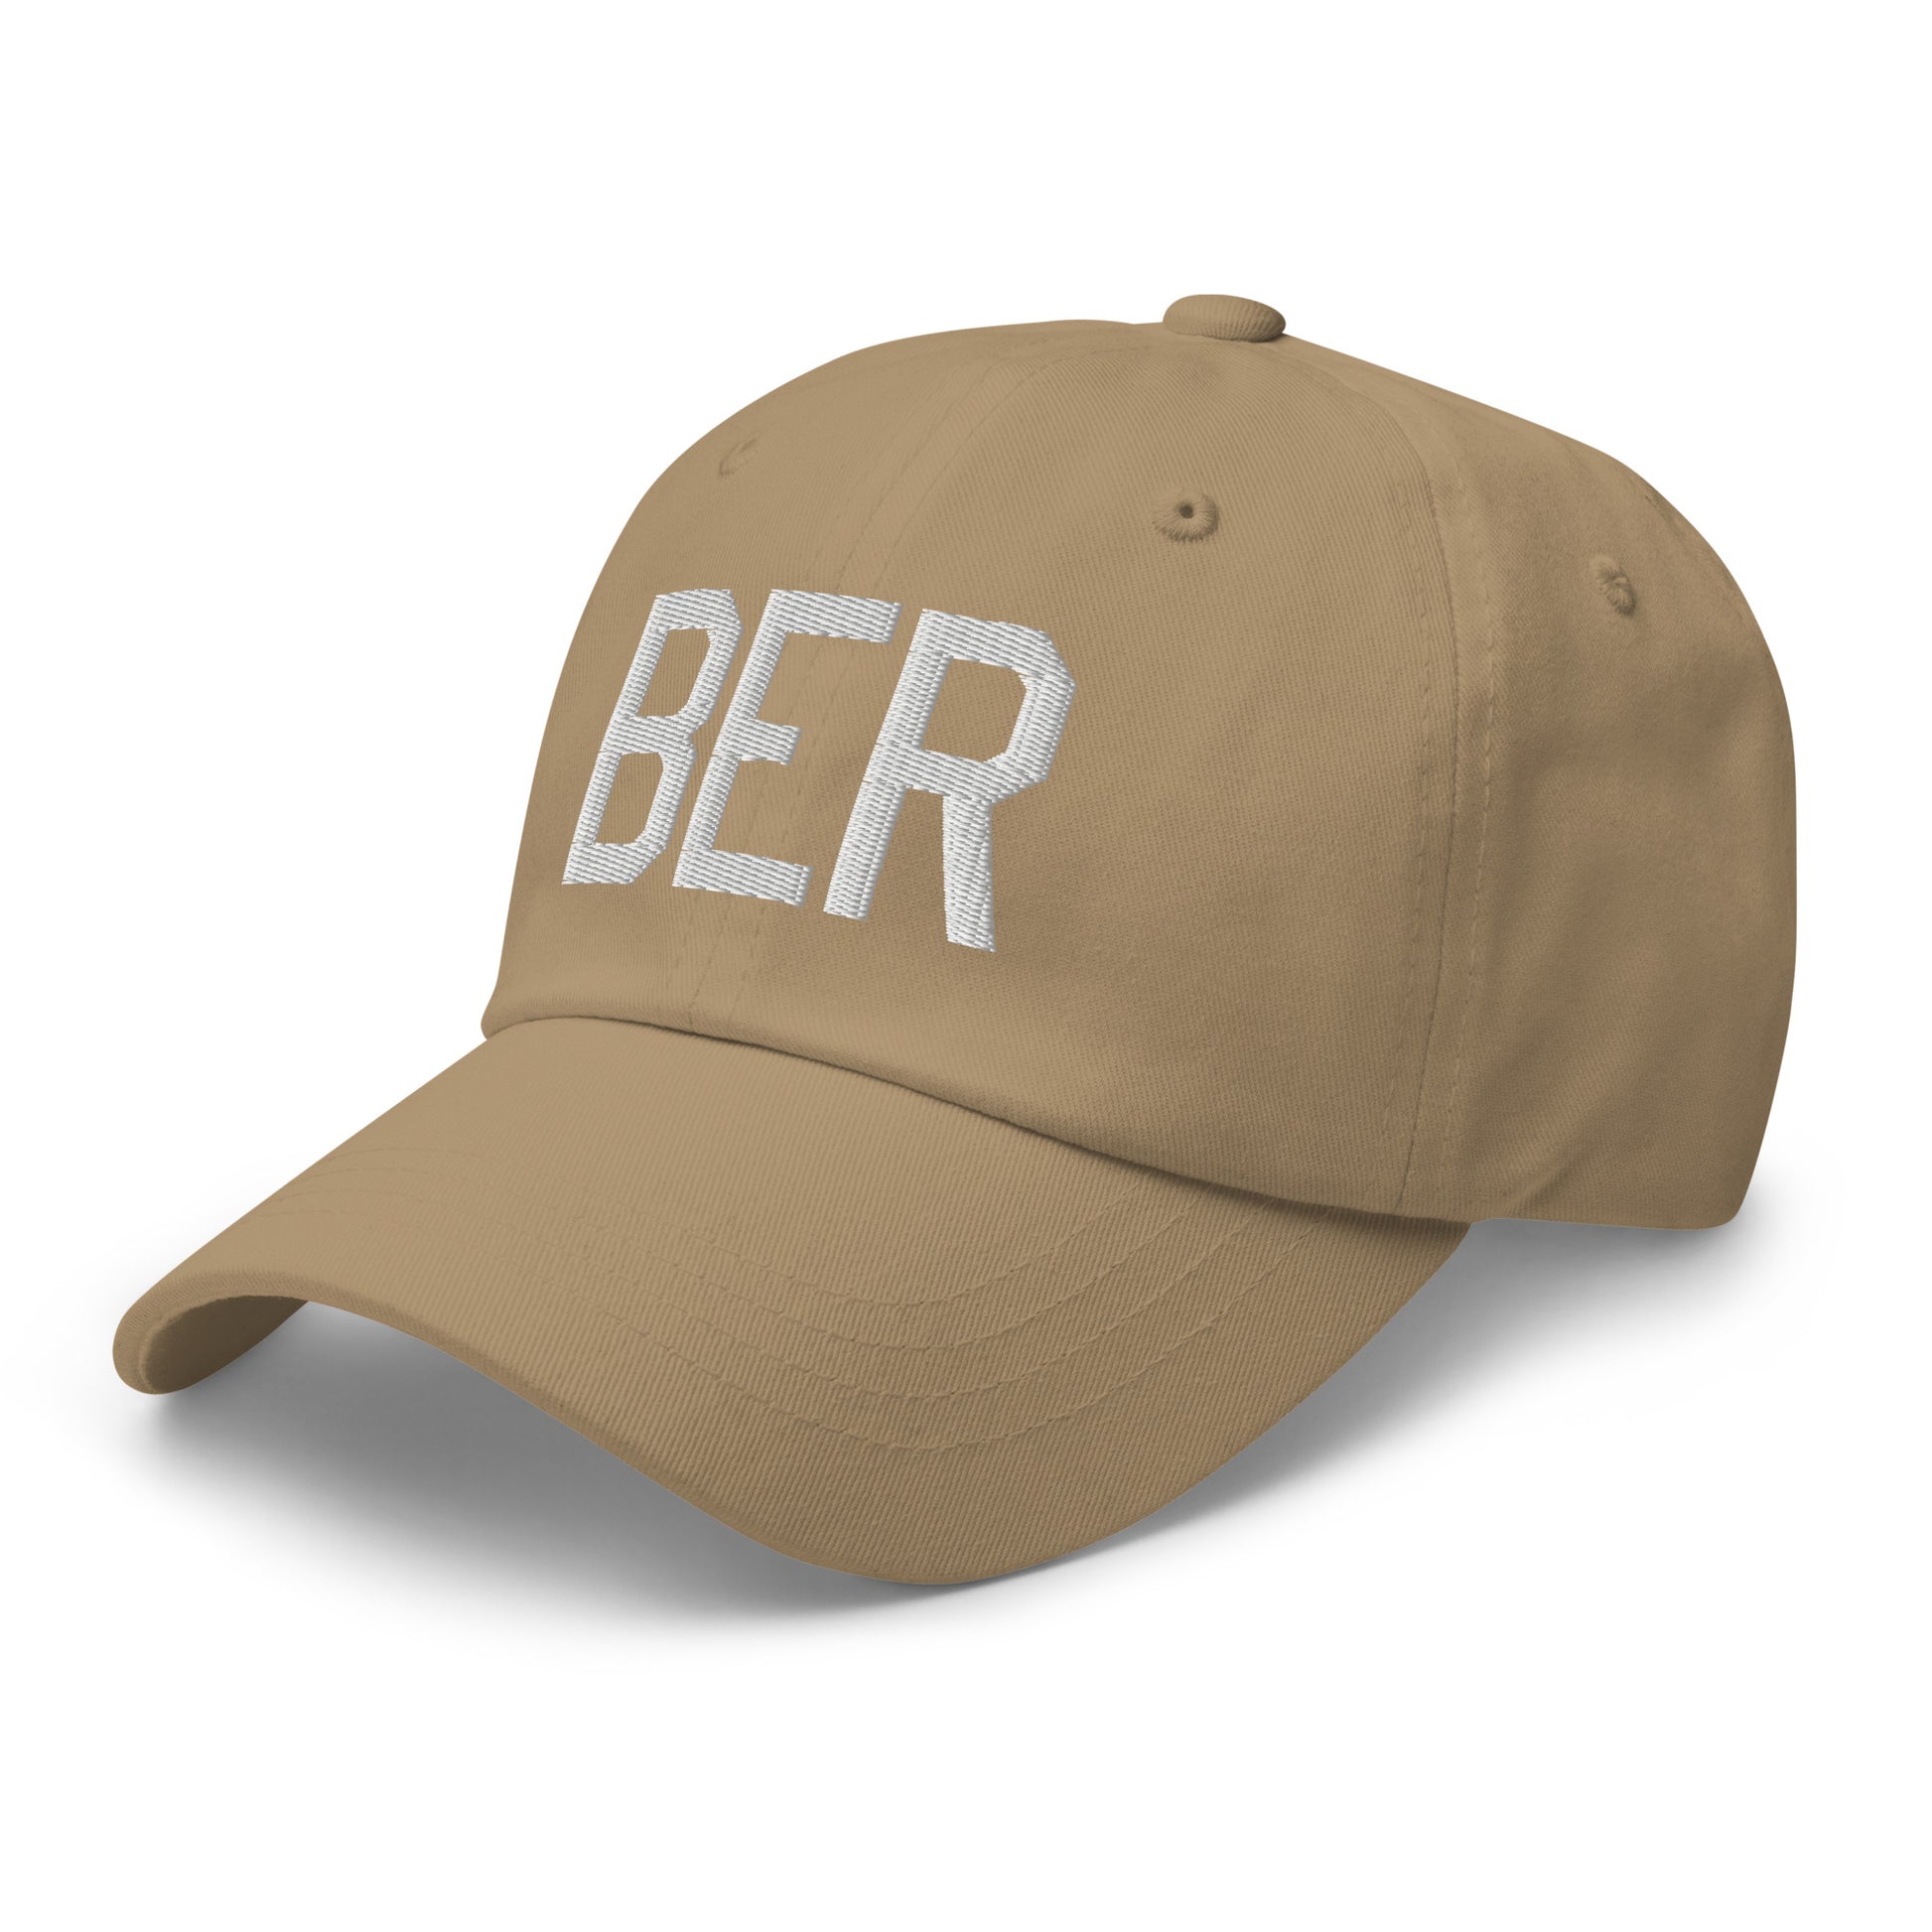 Airport Code Baseball Cap - White • BER Berlin • YHM Designs - Image 24